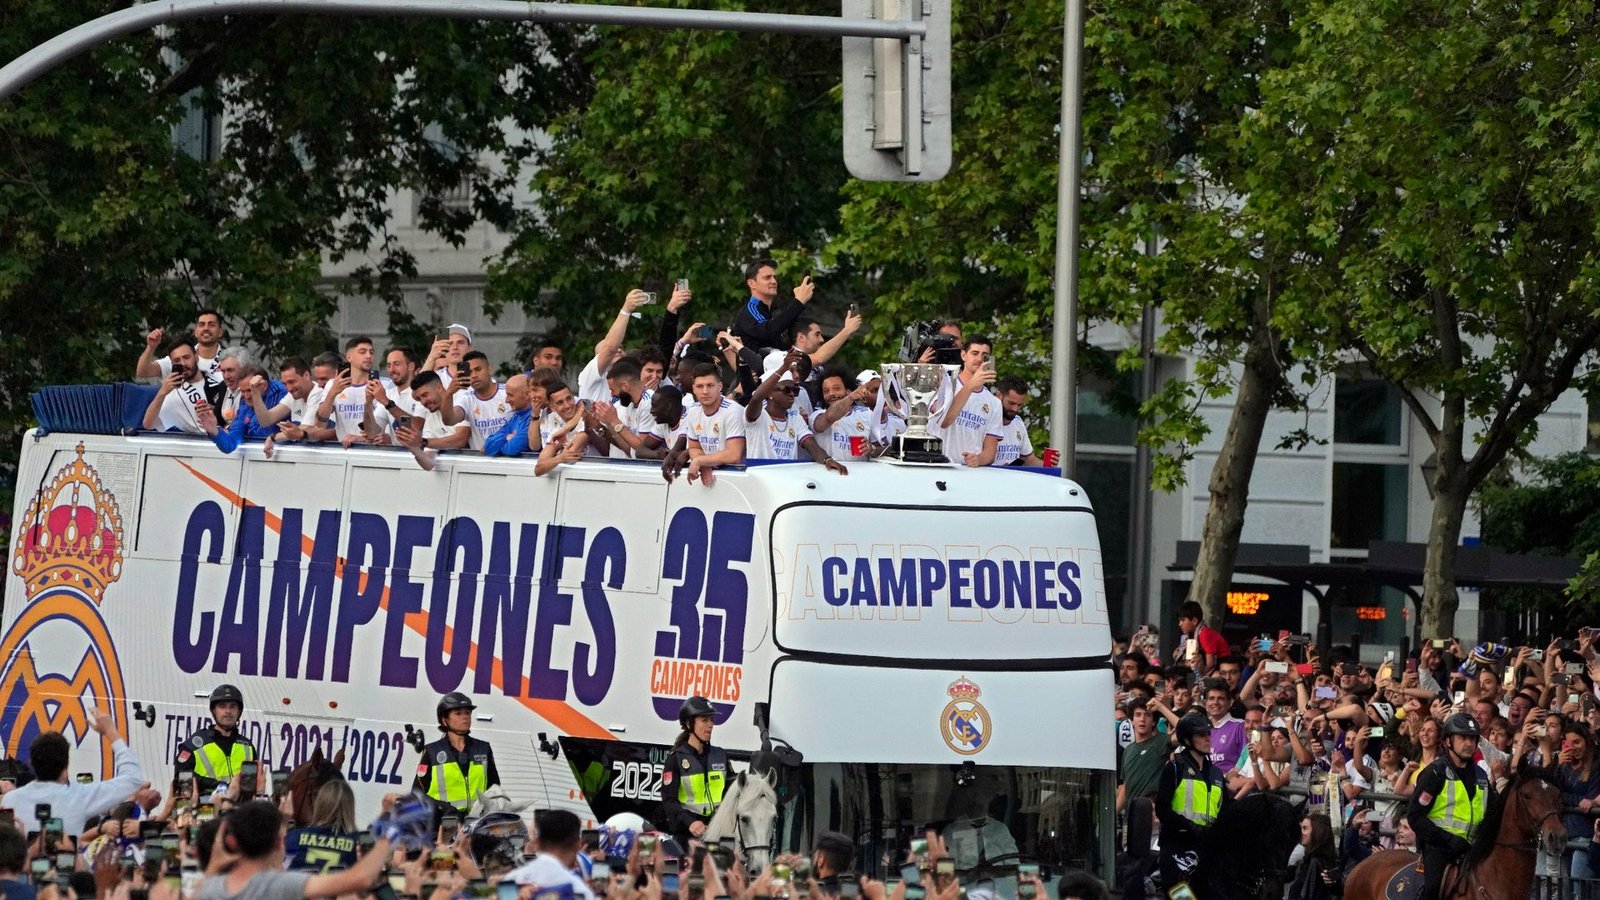 Nach dem Gewinn der spanischen Meisterschaft ging es für das Team von Real Madrid per Bus zur großen Party.Foto: Paul White/AP/dpa